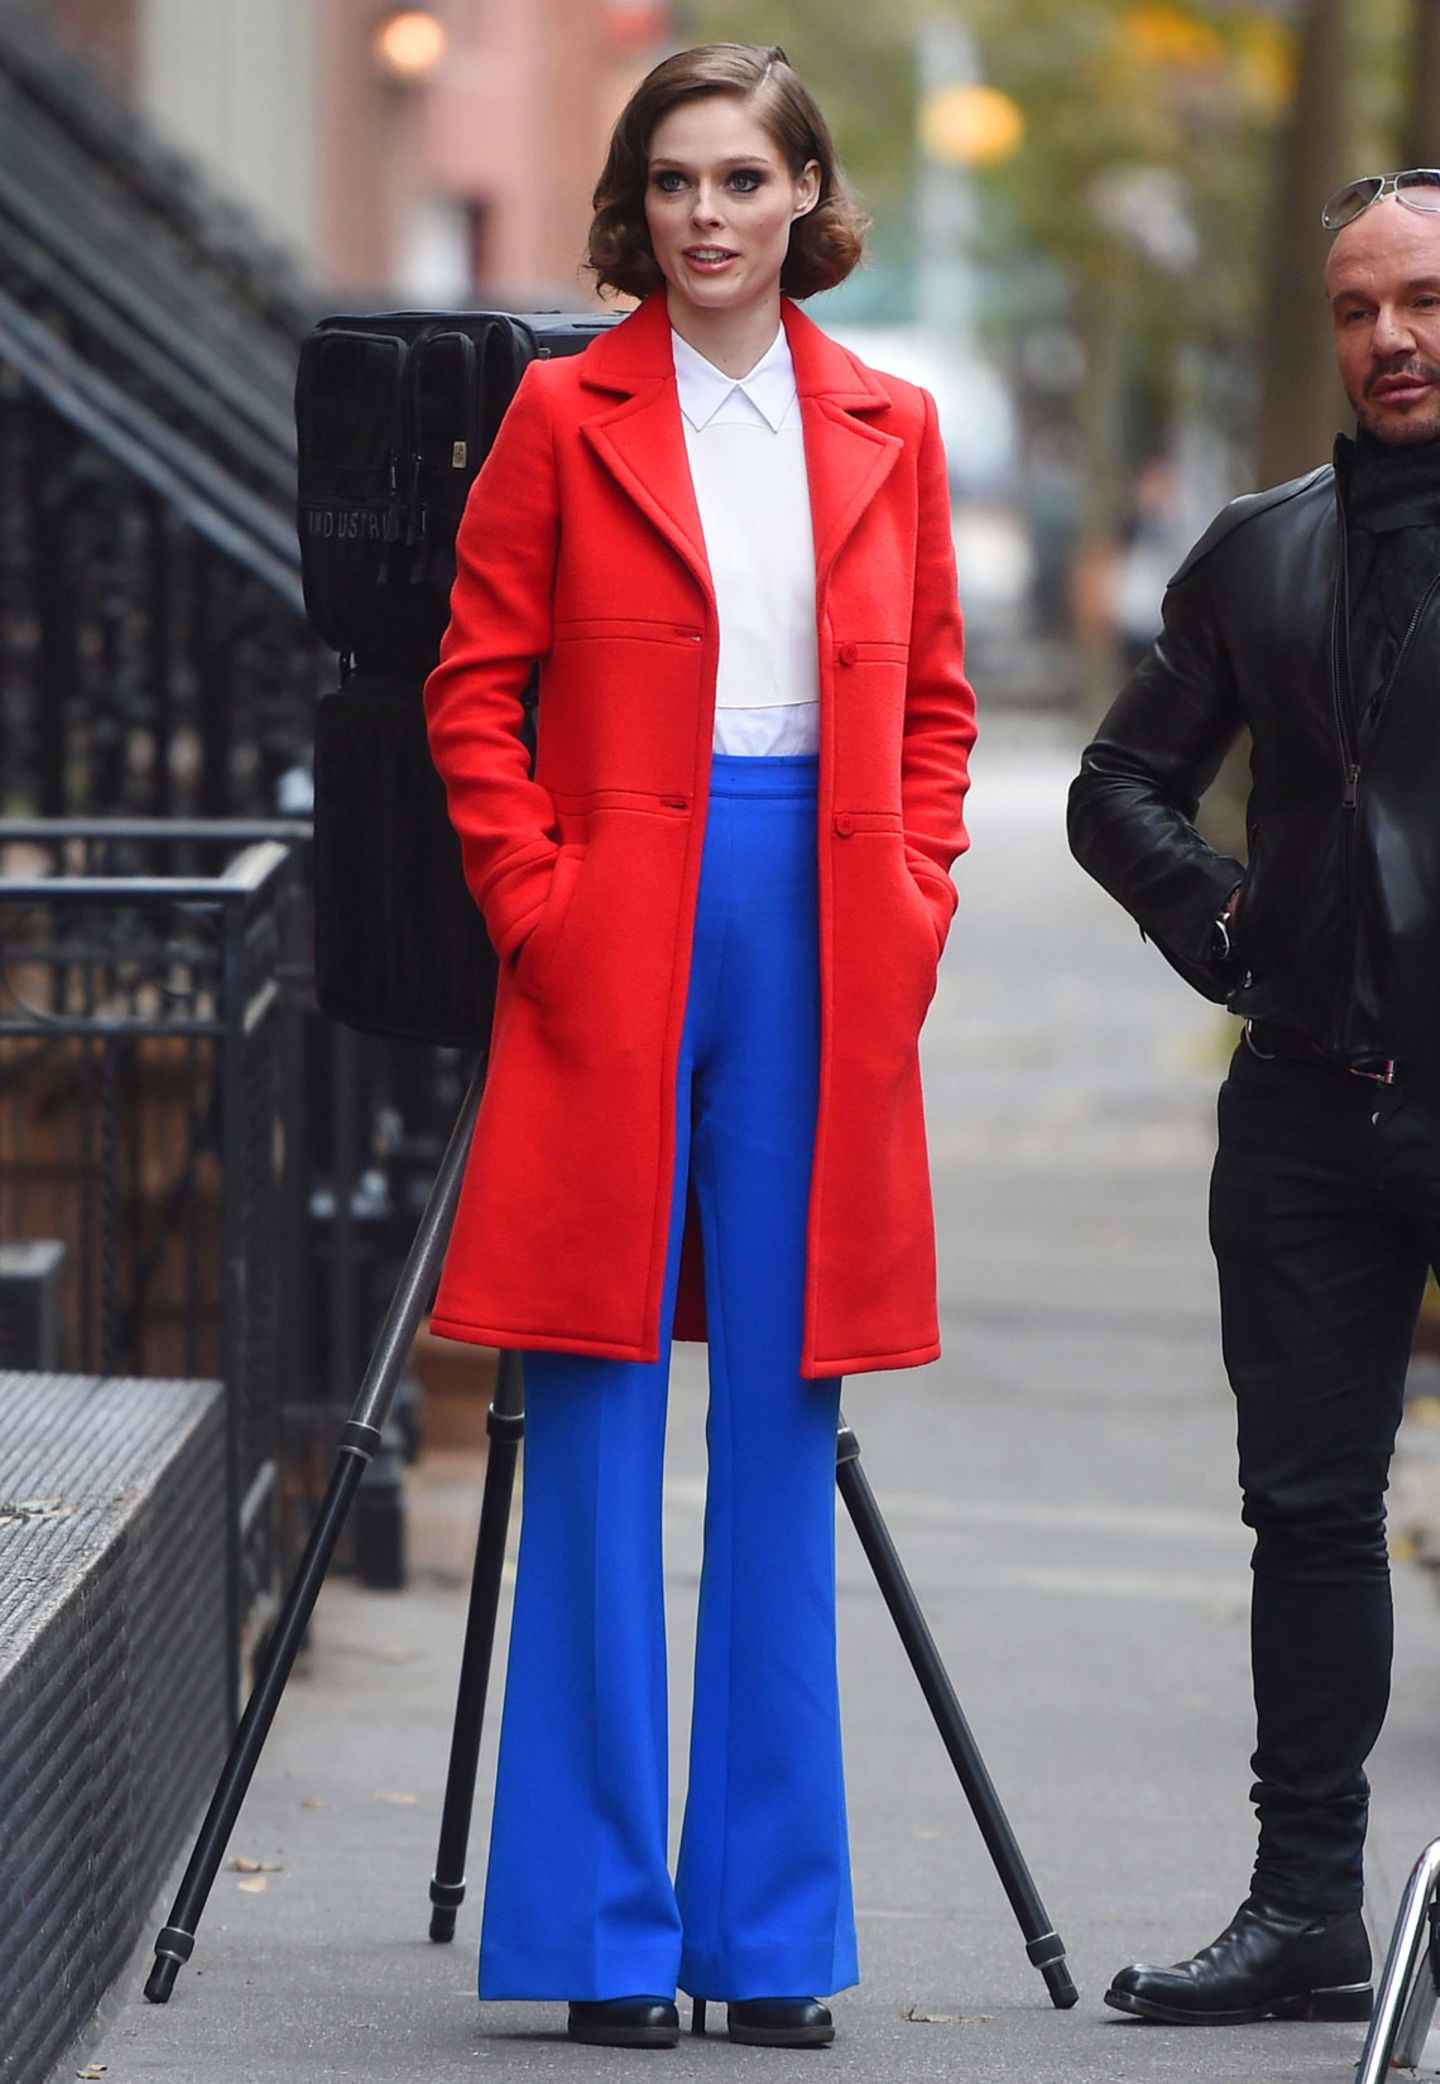 Colour-Blocking ist auch bei Topmodel Coco Rocha angesagt: Im leuchtenden Retro-Outfit dreht sie in New York ihre eigene TV-Shoe "The Face".